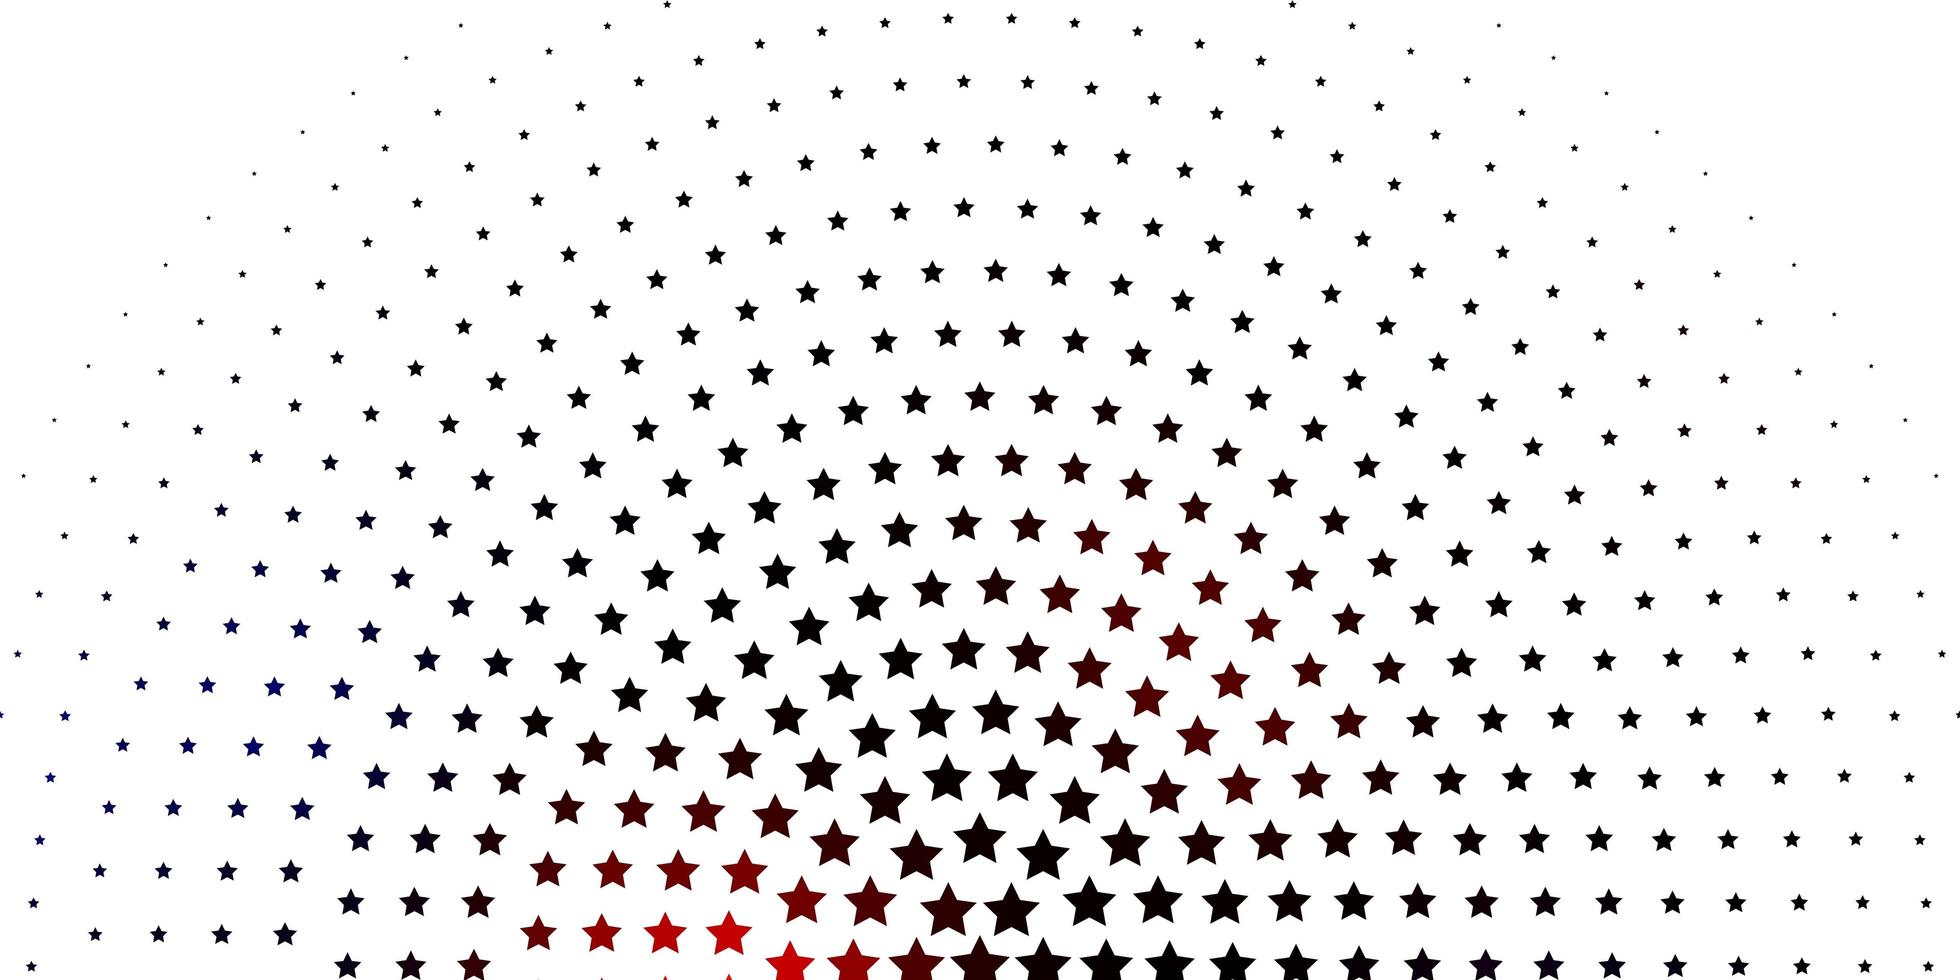 fond de vecteur rouge clair avec des étoiles colorées illustration colorée dans un style abstrait avec motif étoiles dégradé pour les livrets publicitaires du nouvel an